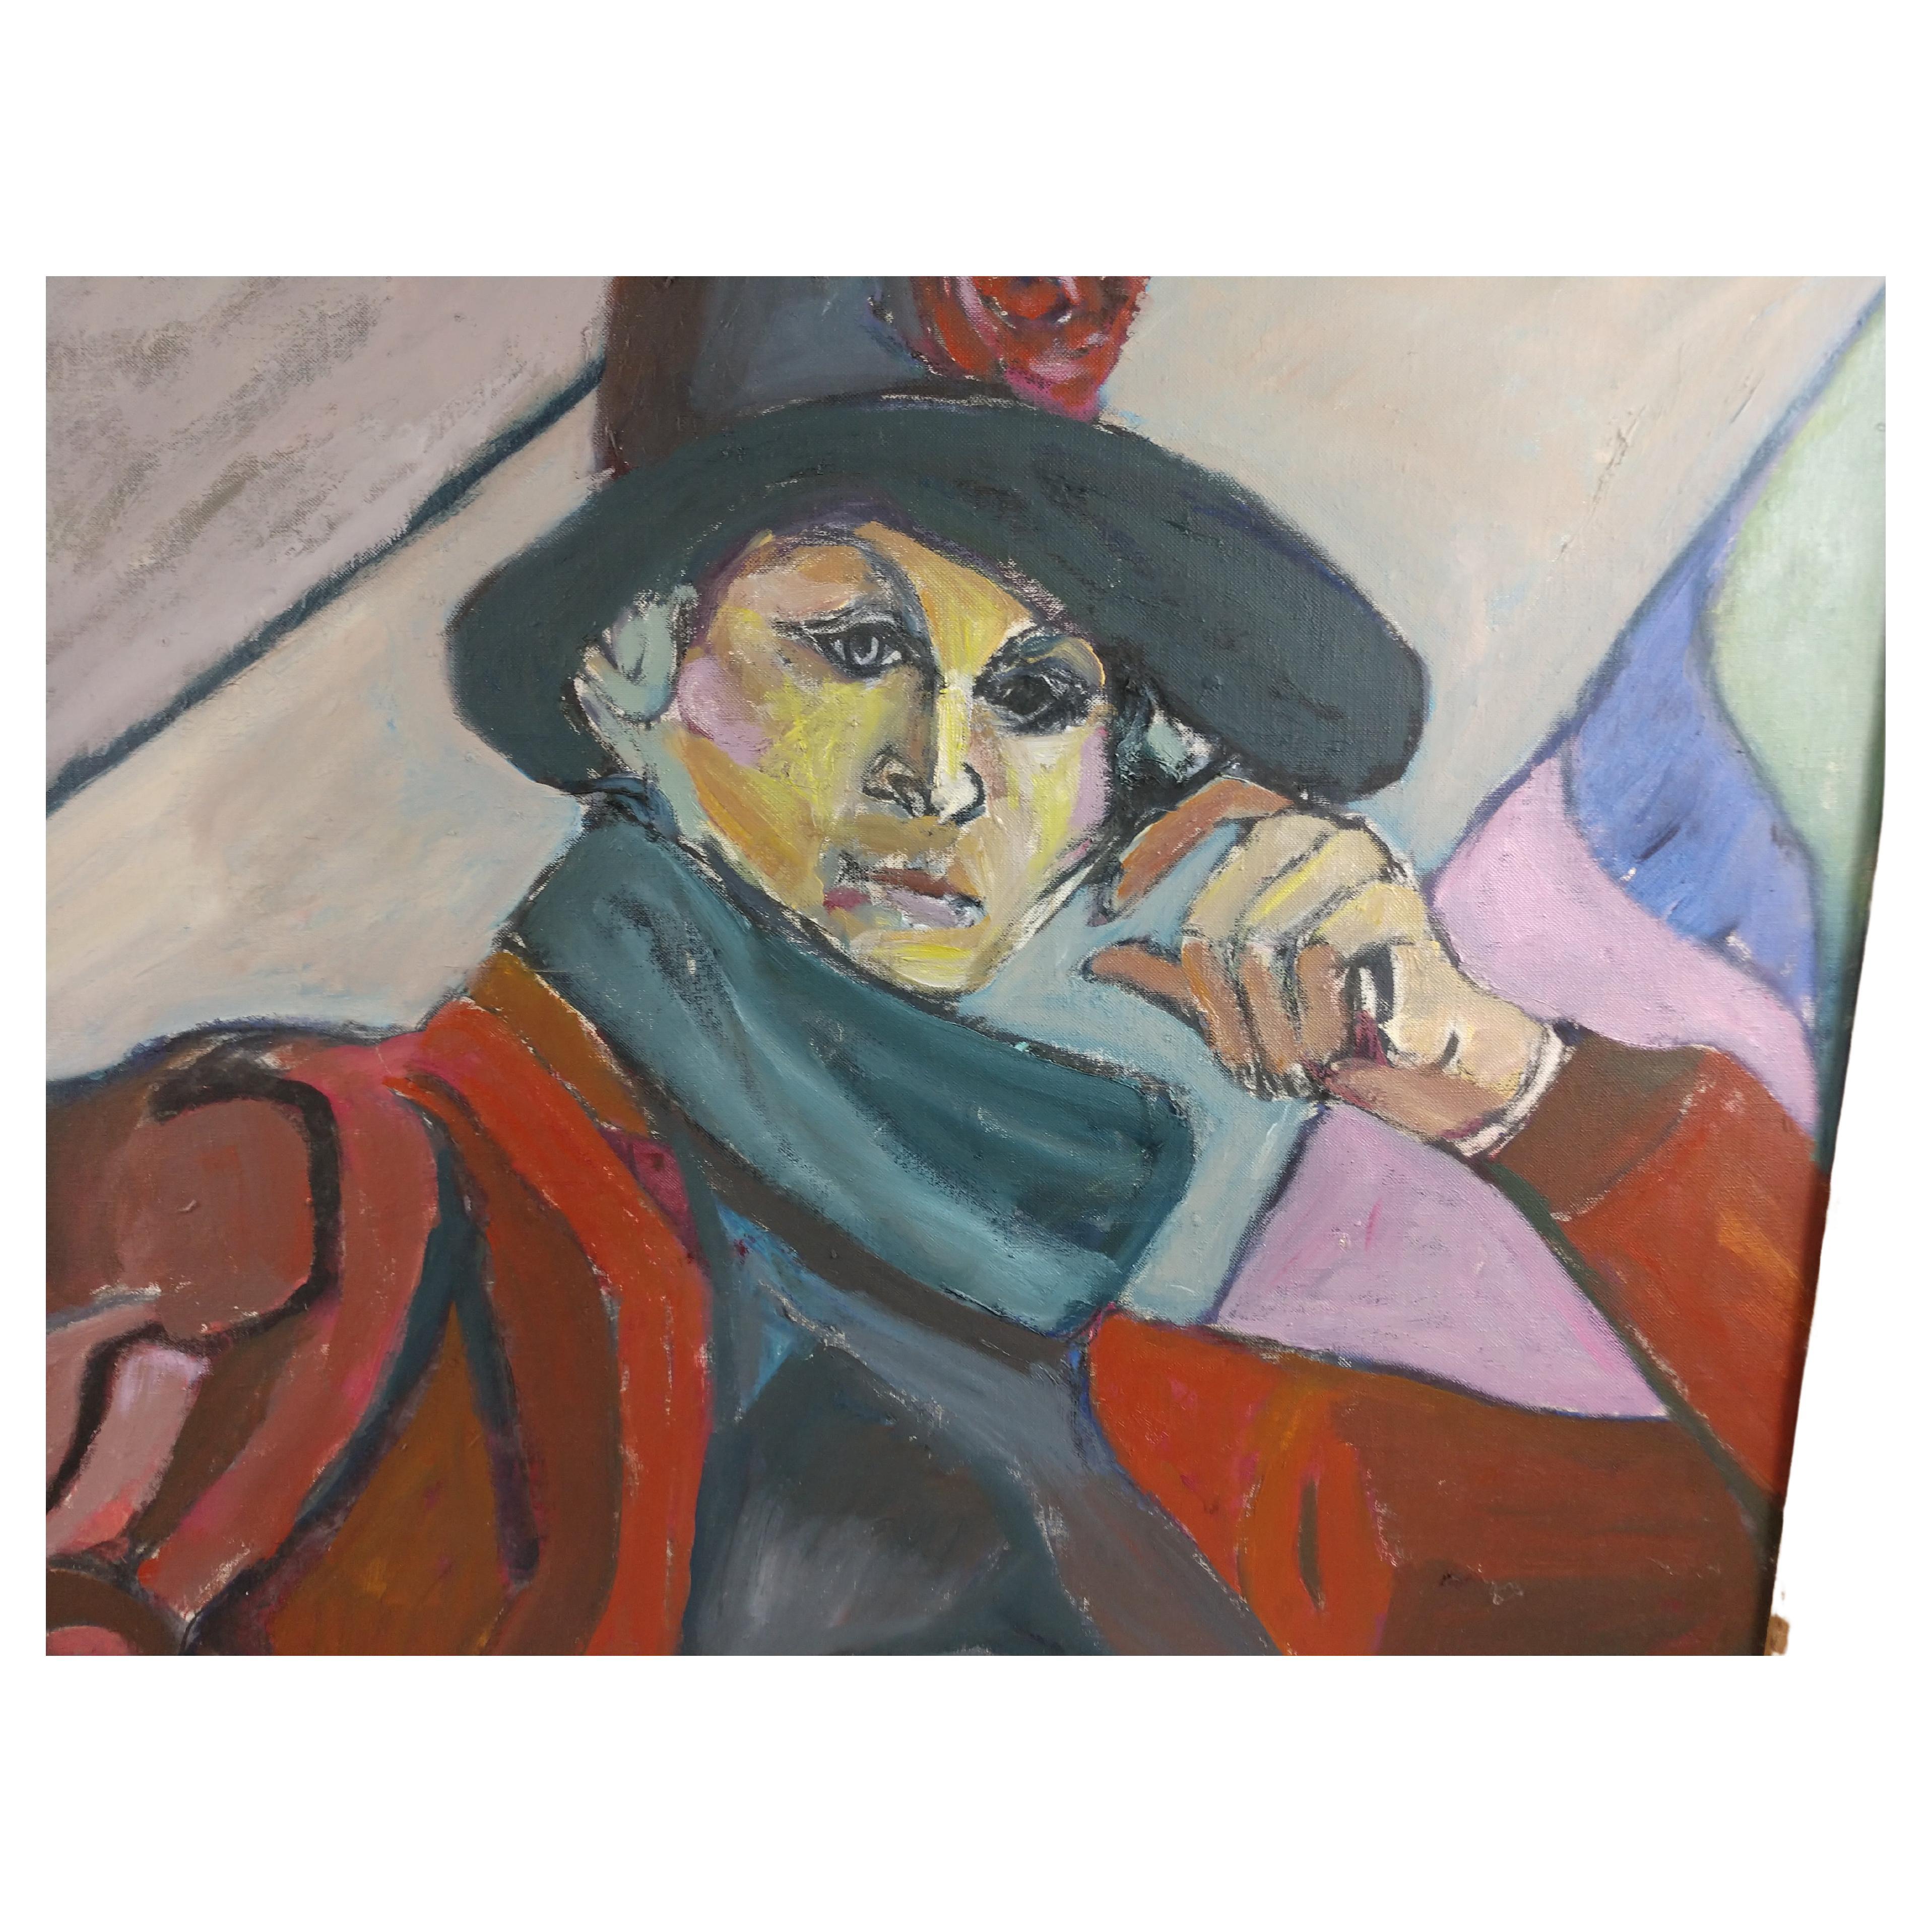 Représentation colorée et impressionniste d'une femme avec chapeau et écharpe. Un ami de l'artiste à Paris. Non encadré.